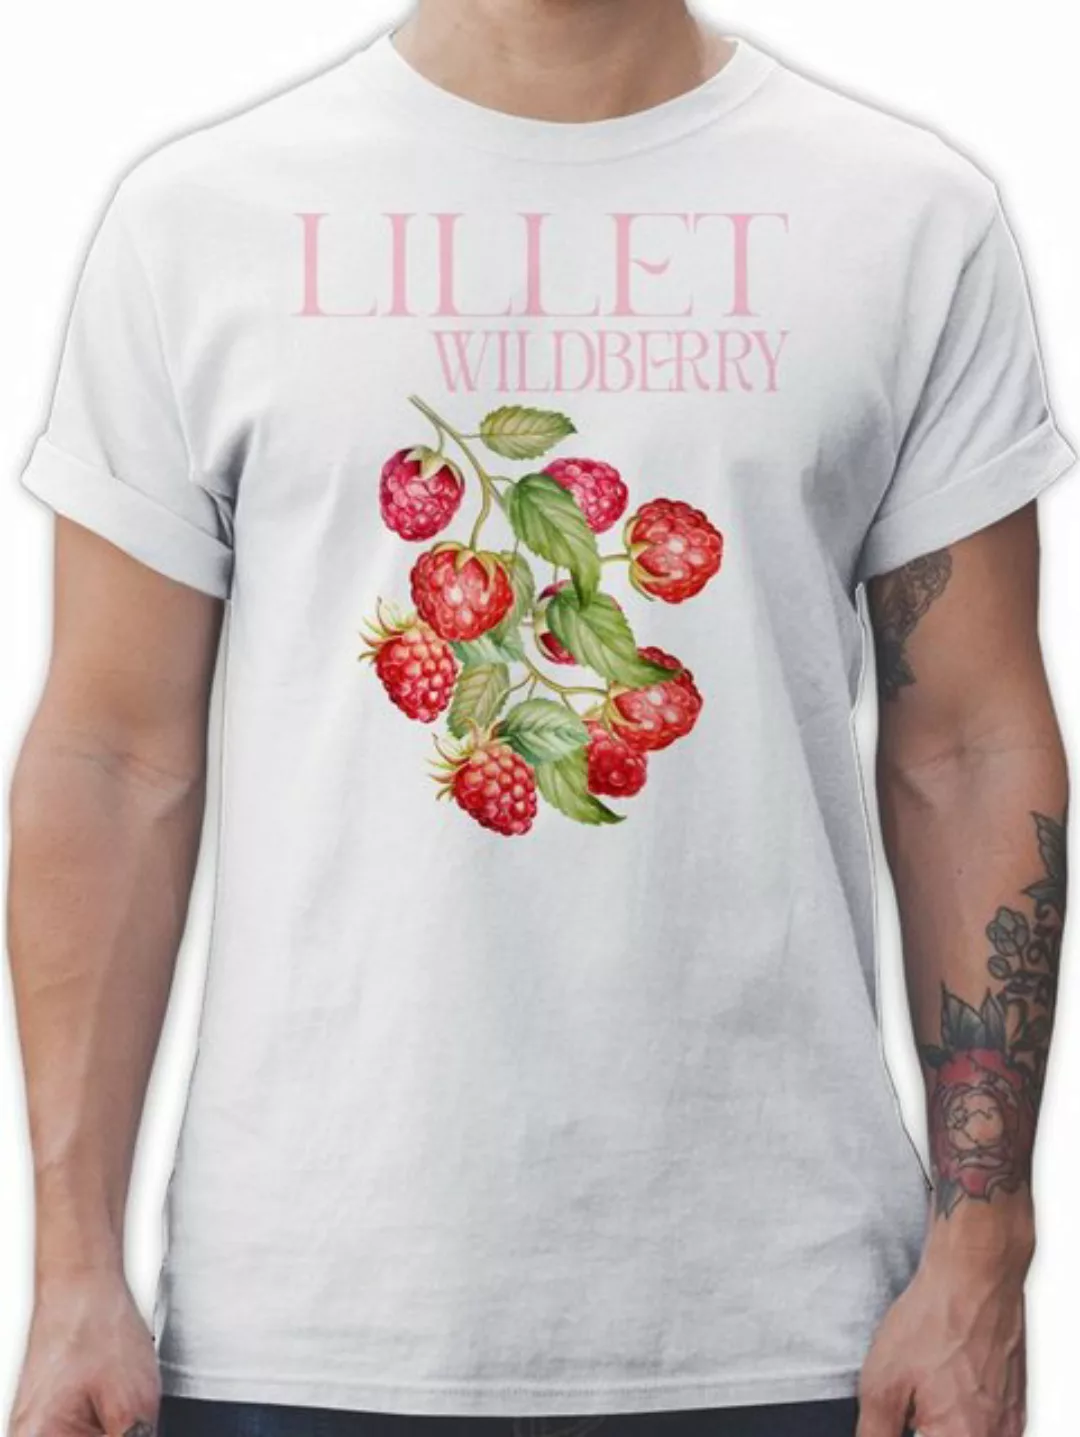 Shirtracer T-Shirt Wild Berry Lillet Wildberry Himbeeren Lillet Kostüm Karn günstig online kaufen